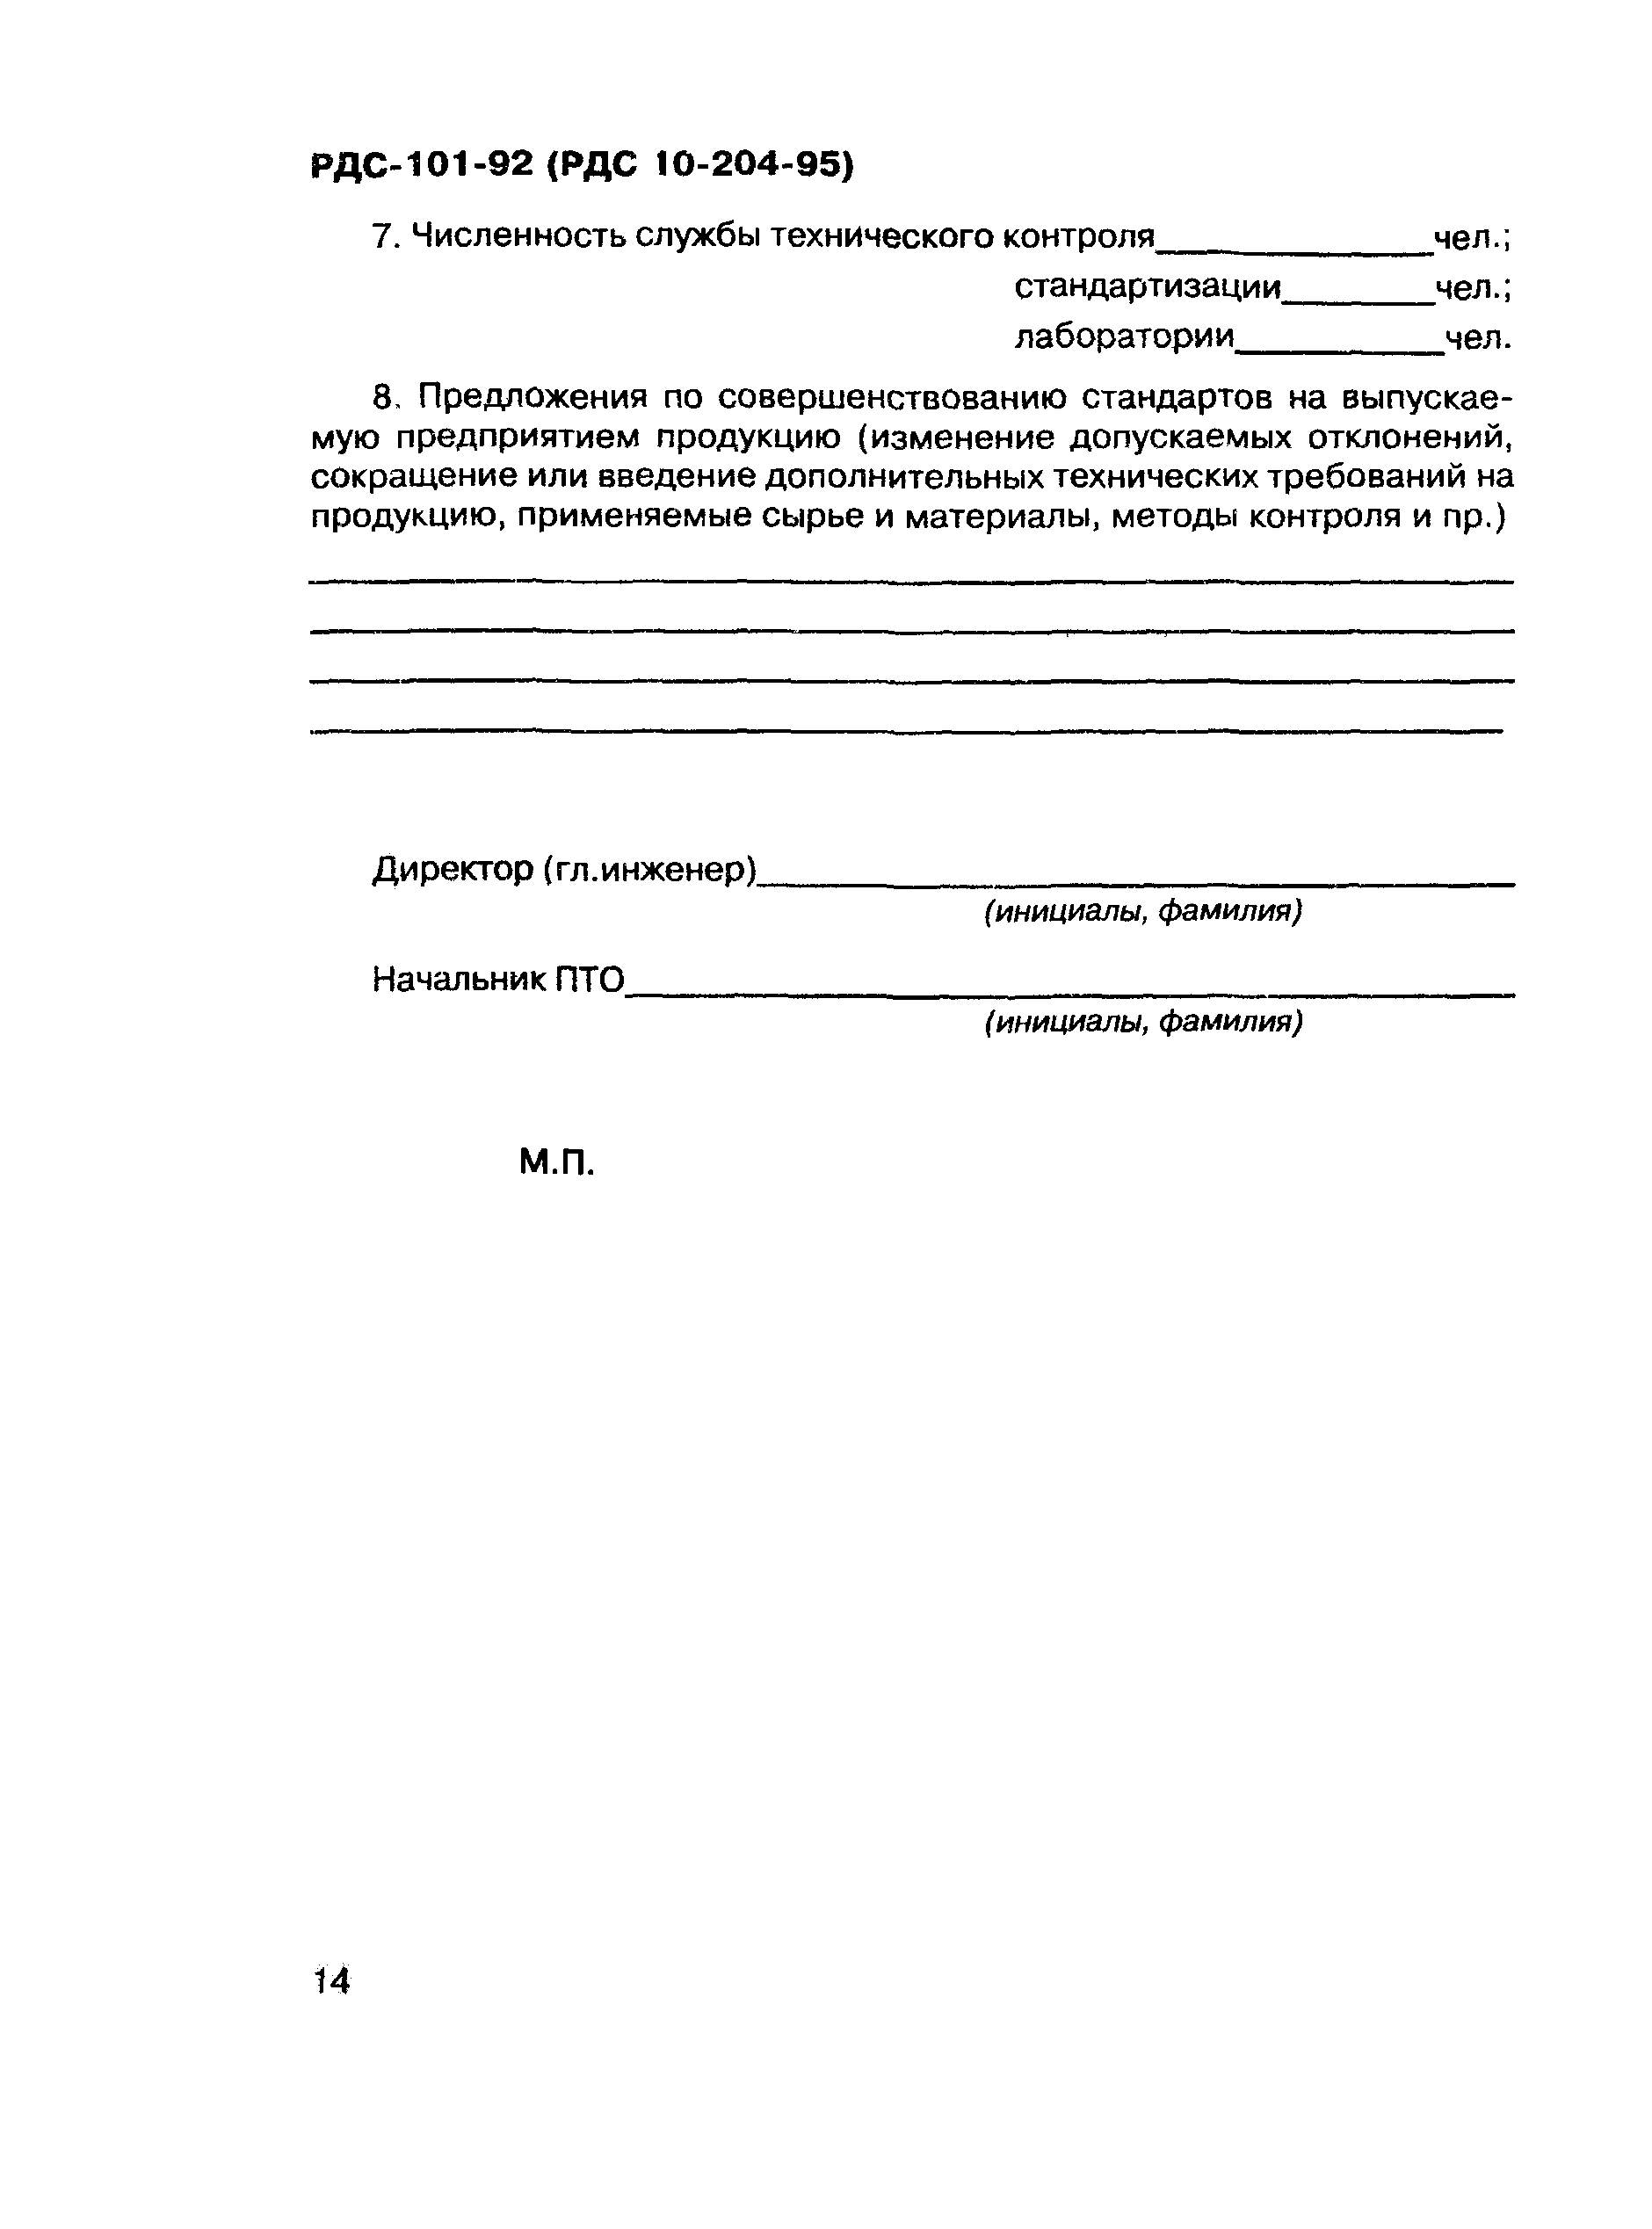 РДС 10-204-95